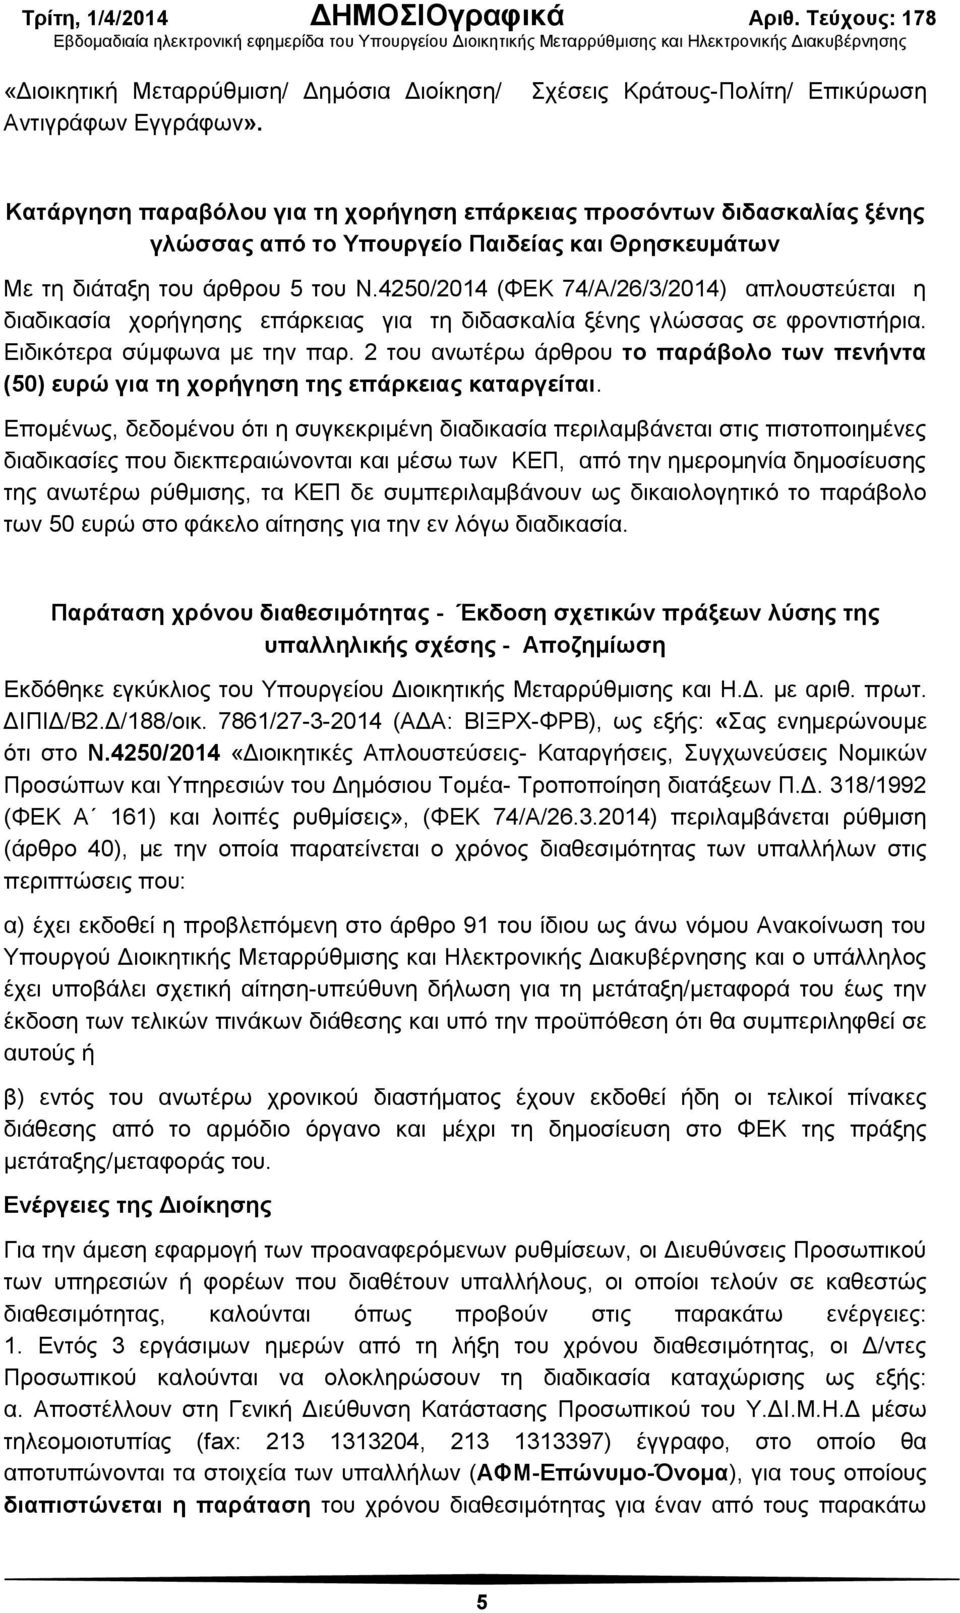 4250/2014 (ΦΕΚ 74/Α/26/3/2014) απλουστεύεται η διαδικασία χορήγησης επάρκειας για τη διδασκαλία ξένης γλώσσας σε φροντιστήρια. Ειδικότερα σύμφωνα με την παρ.